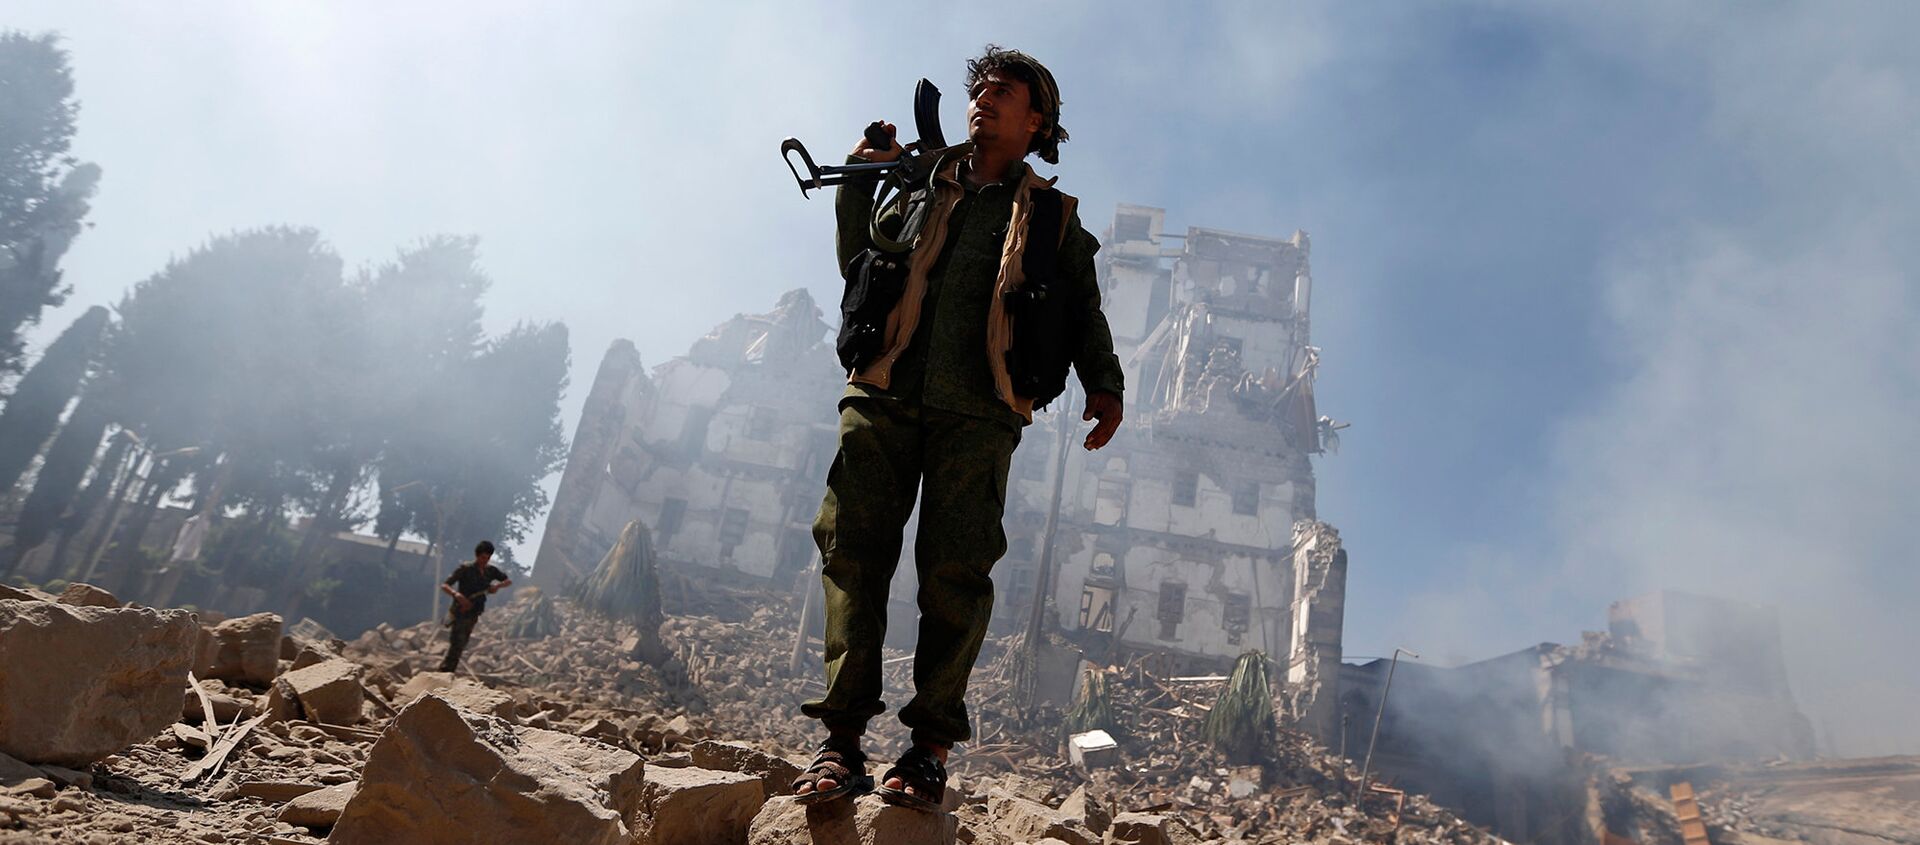 Боевики повстанцев хуситы осматривают повреждения после нанесенного воздушного удара коалицией, возглавляемой Саудовской Аравией по президентскому дворцу (15 декабря 2017). Сана, Йемен - Sputnik Армения, 1920, 24.07.2018